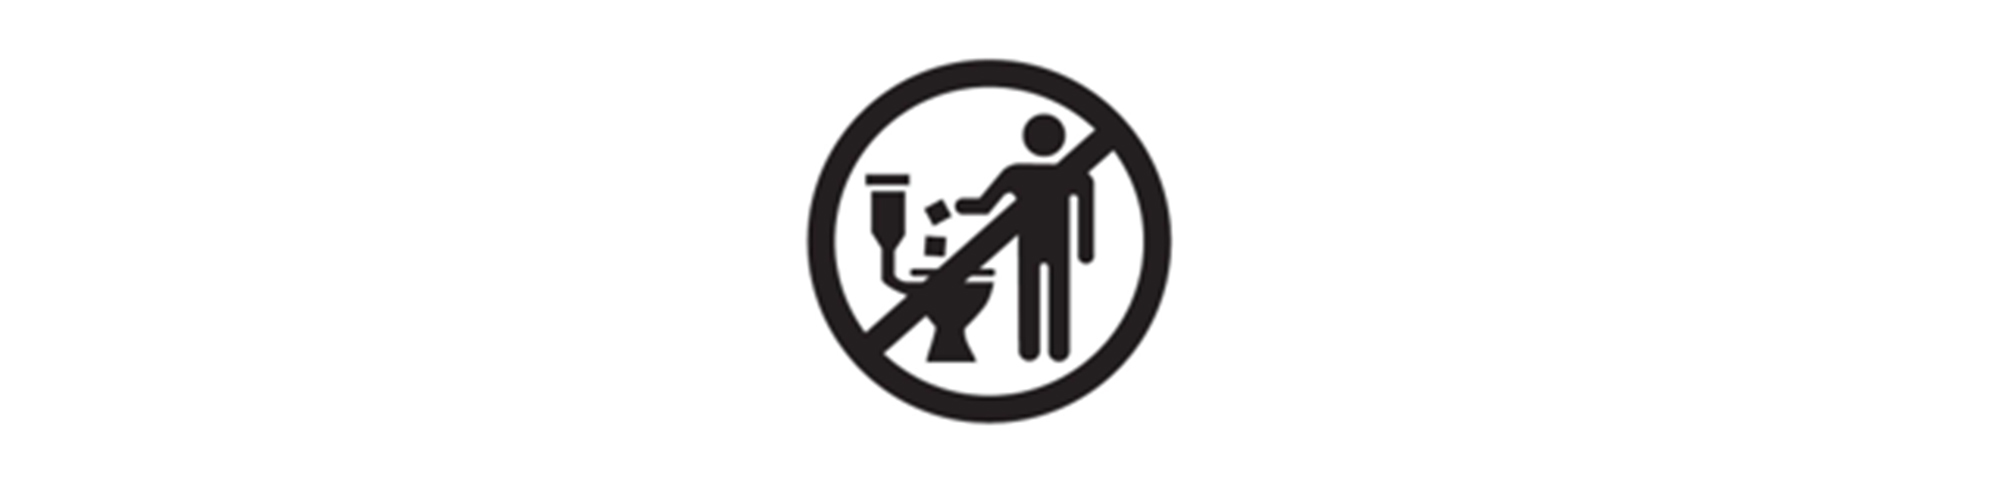 Zudem befindet sich auf der Verpackungsrückseite vieler Feuchttücher bereits das „Do not flush“ Symbol. Dieses zeigt ganz klar, welche Feuchttücher nicht in die Toilette dürfen.